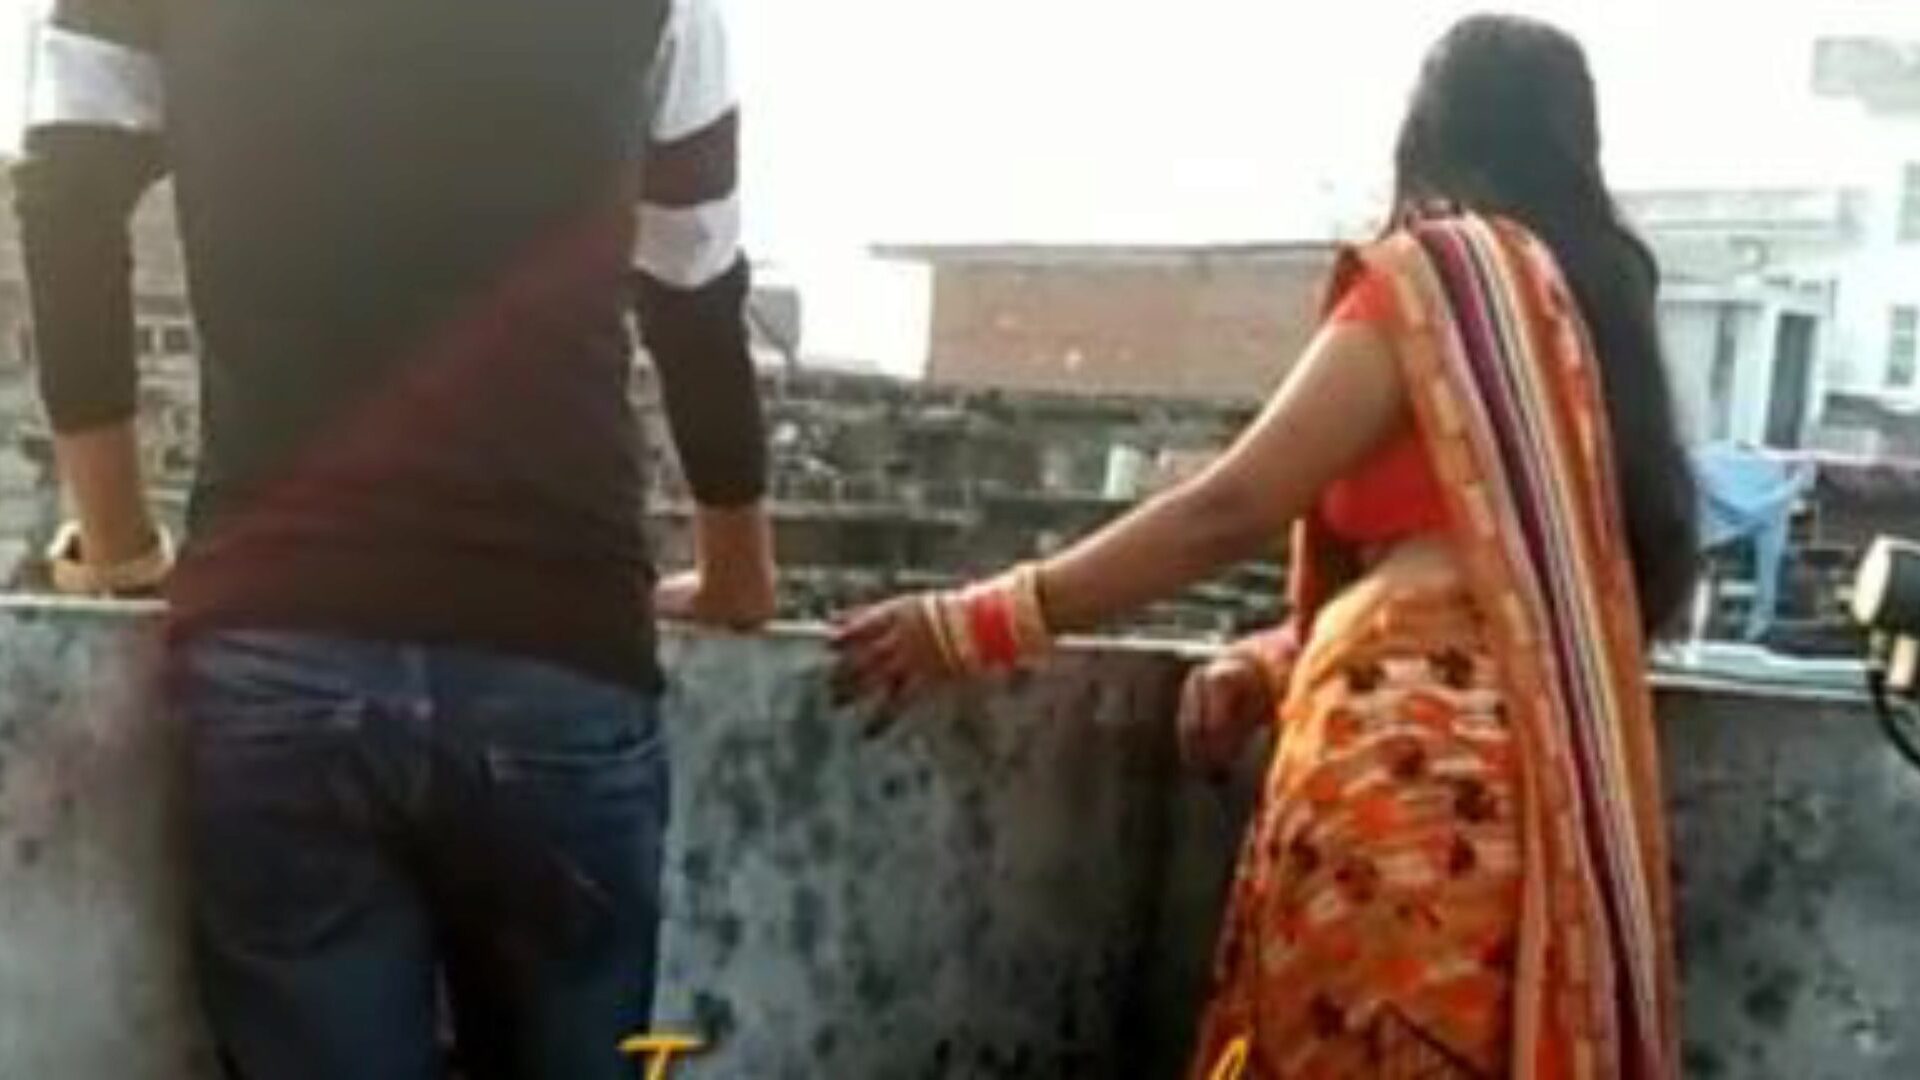 video casalingo indiano scopando la moglie di un amico: porno gratis guarda l'episodio della moglie di un amico video fatto in casa indiano su xhamster - il database definitivo di episodi di pornografia porno gratis per tutti hardcore e fatti in casa